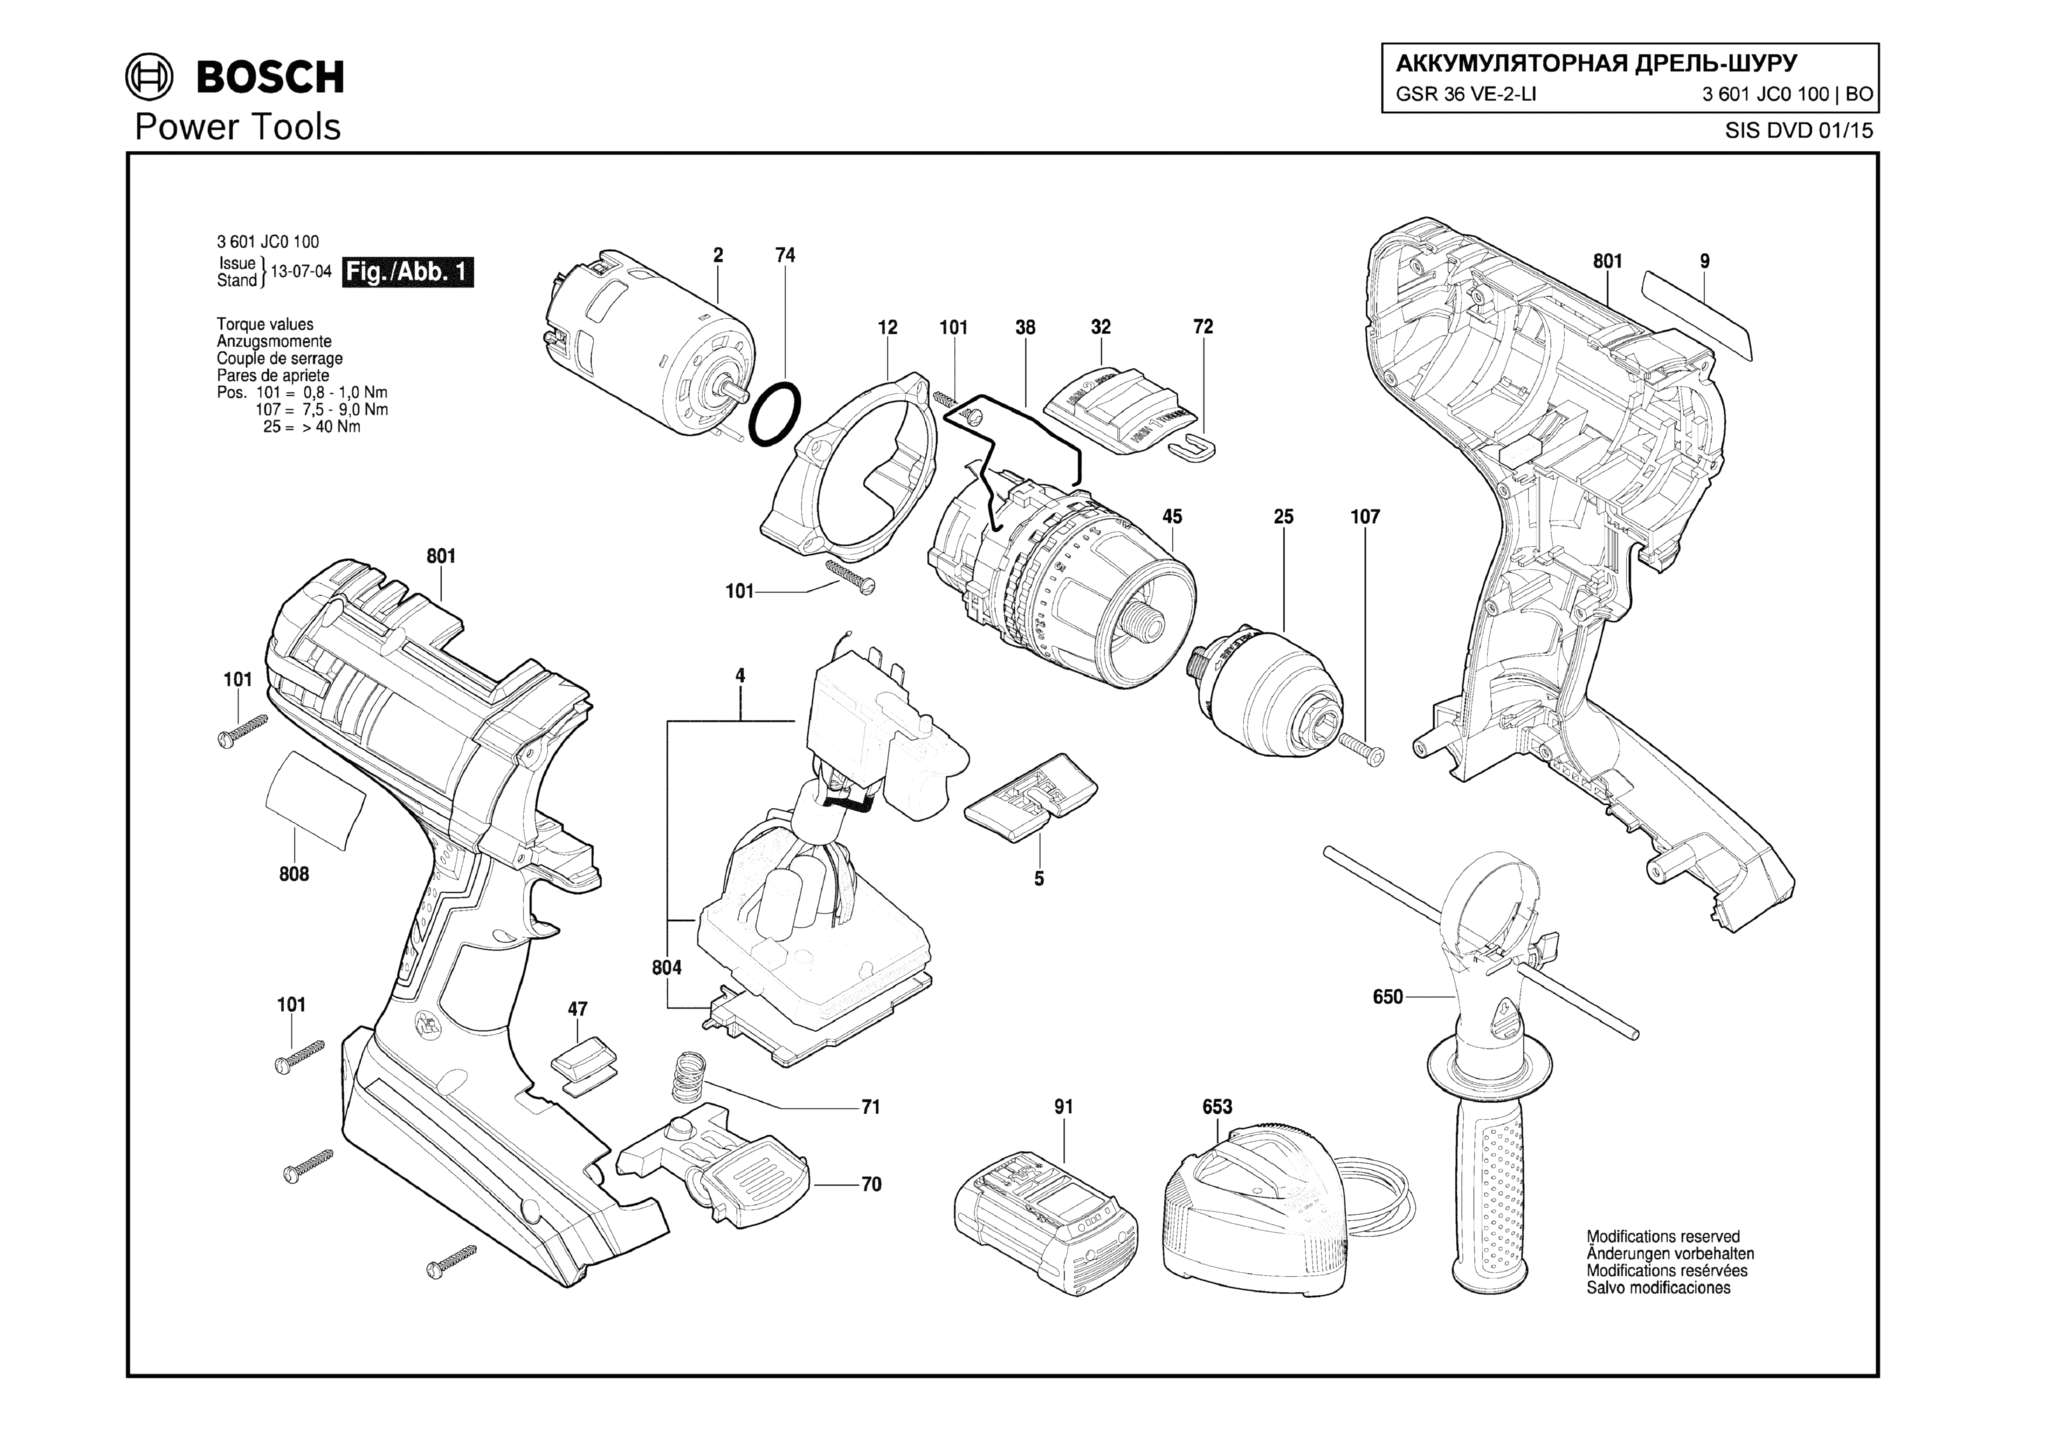 Запчасти, схема и деталировка Bosch GSR 36 VE-2-LI (ТИП 3601JC0100)